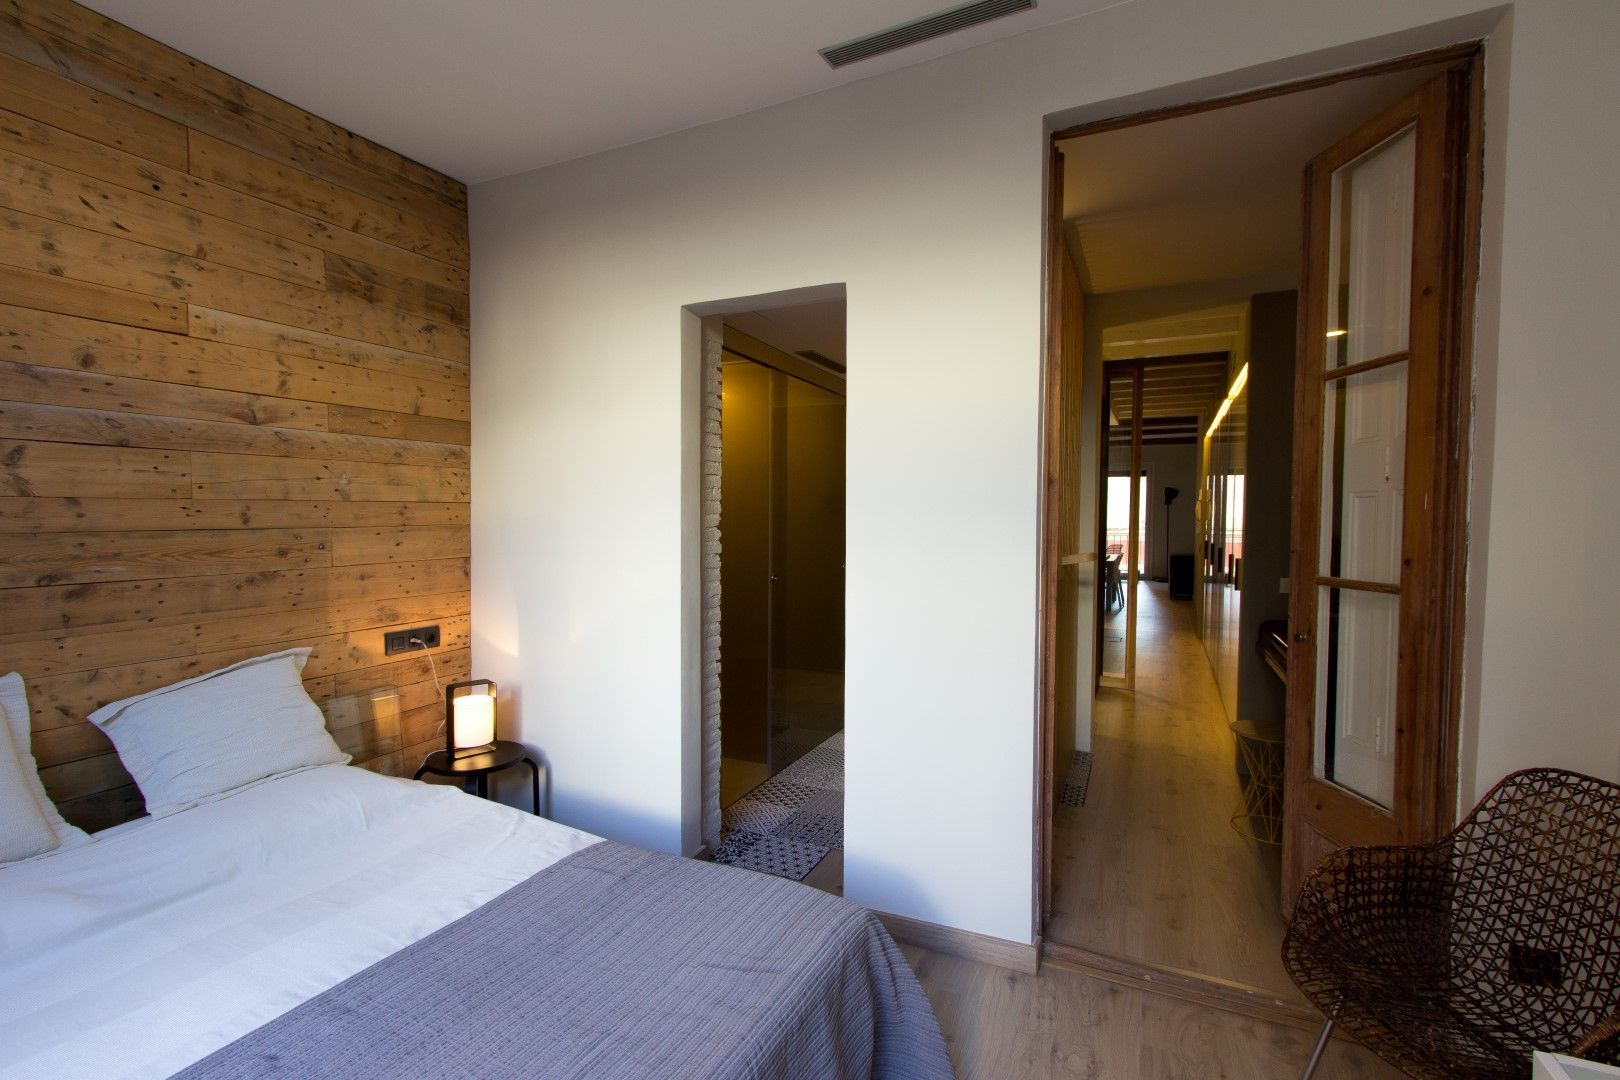 LOFT EN BARCELONA Proyecto de interiorismo para convertir un antiguo piso en un loft donde se valora la calidad del espacio, CREAPROJECTS. Interior design. CREAPROJECTS. Interior design. Modern style bedroom